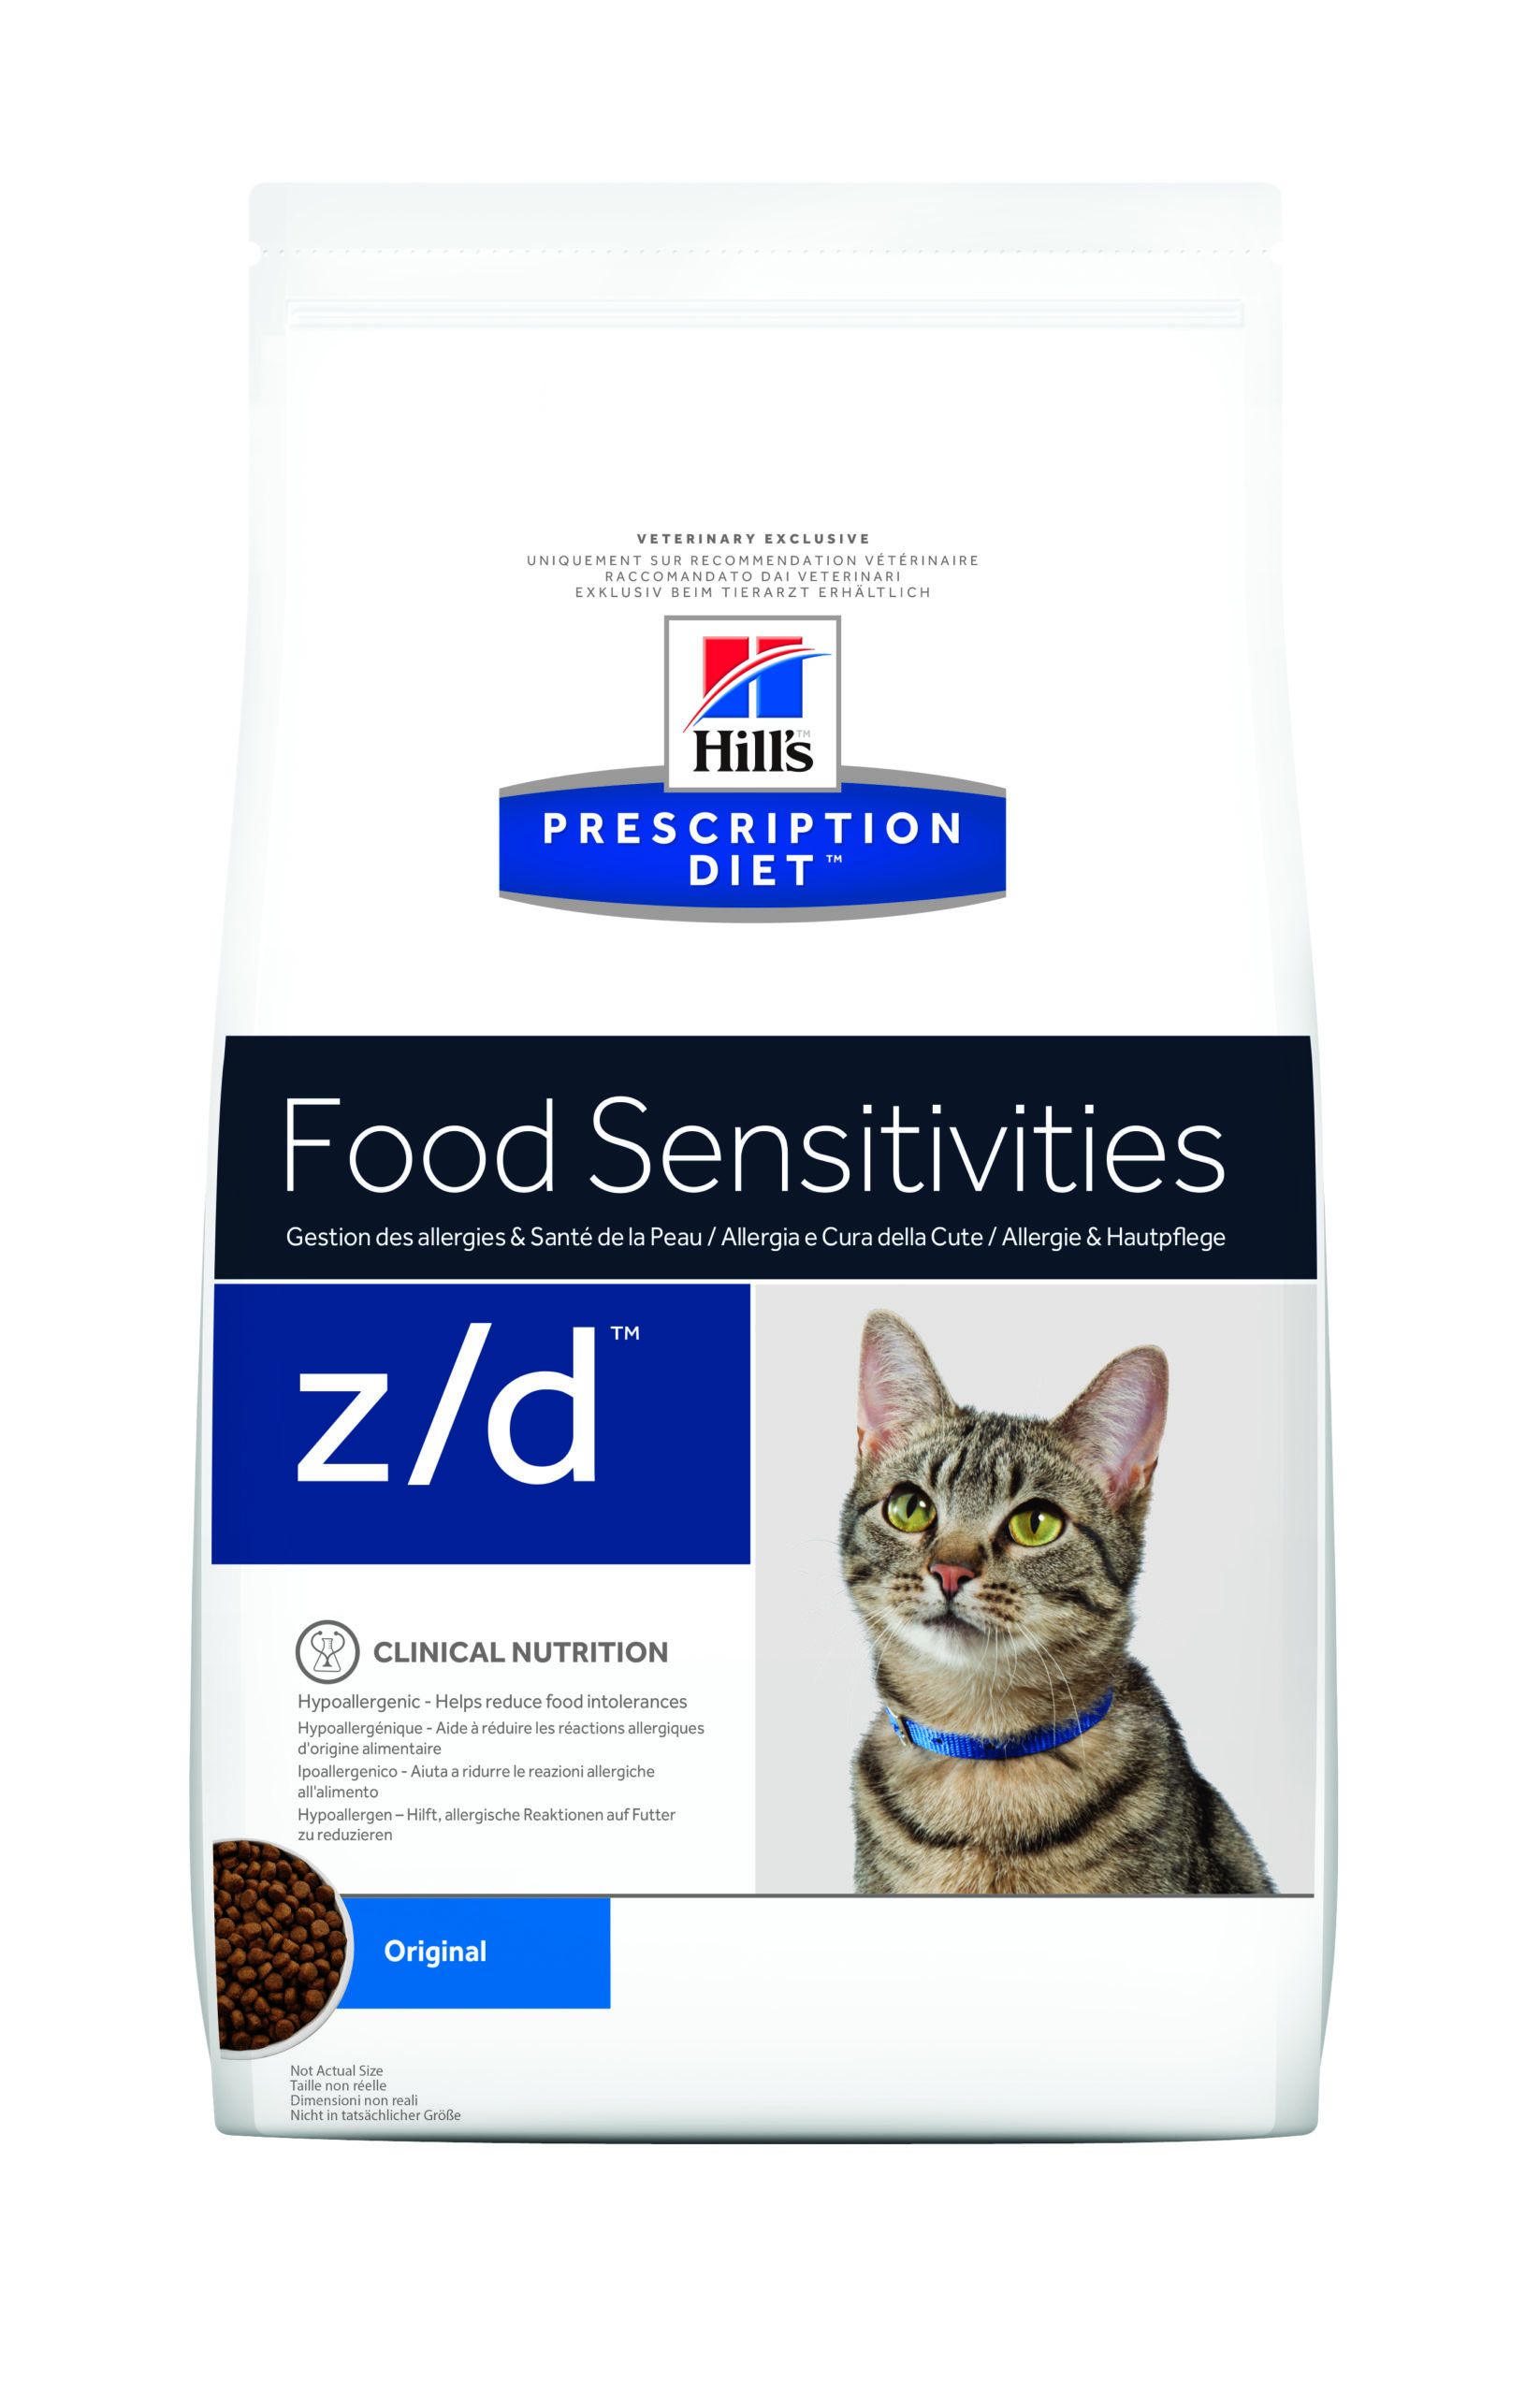 Hill's Prescription Diet z/d Food Sensitivities pour chat (2kg